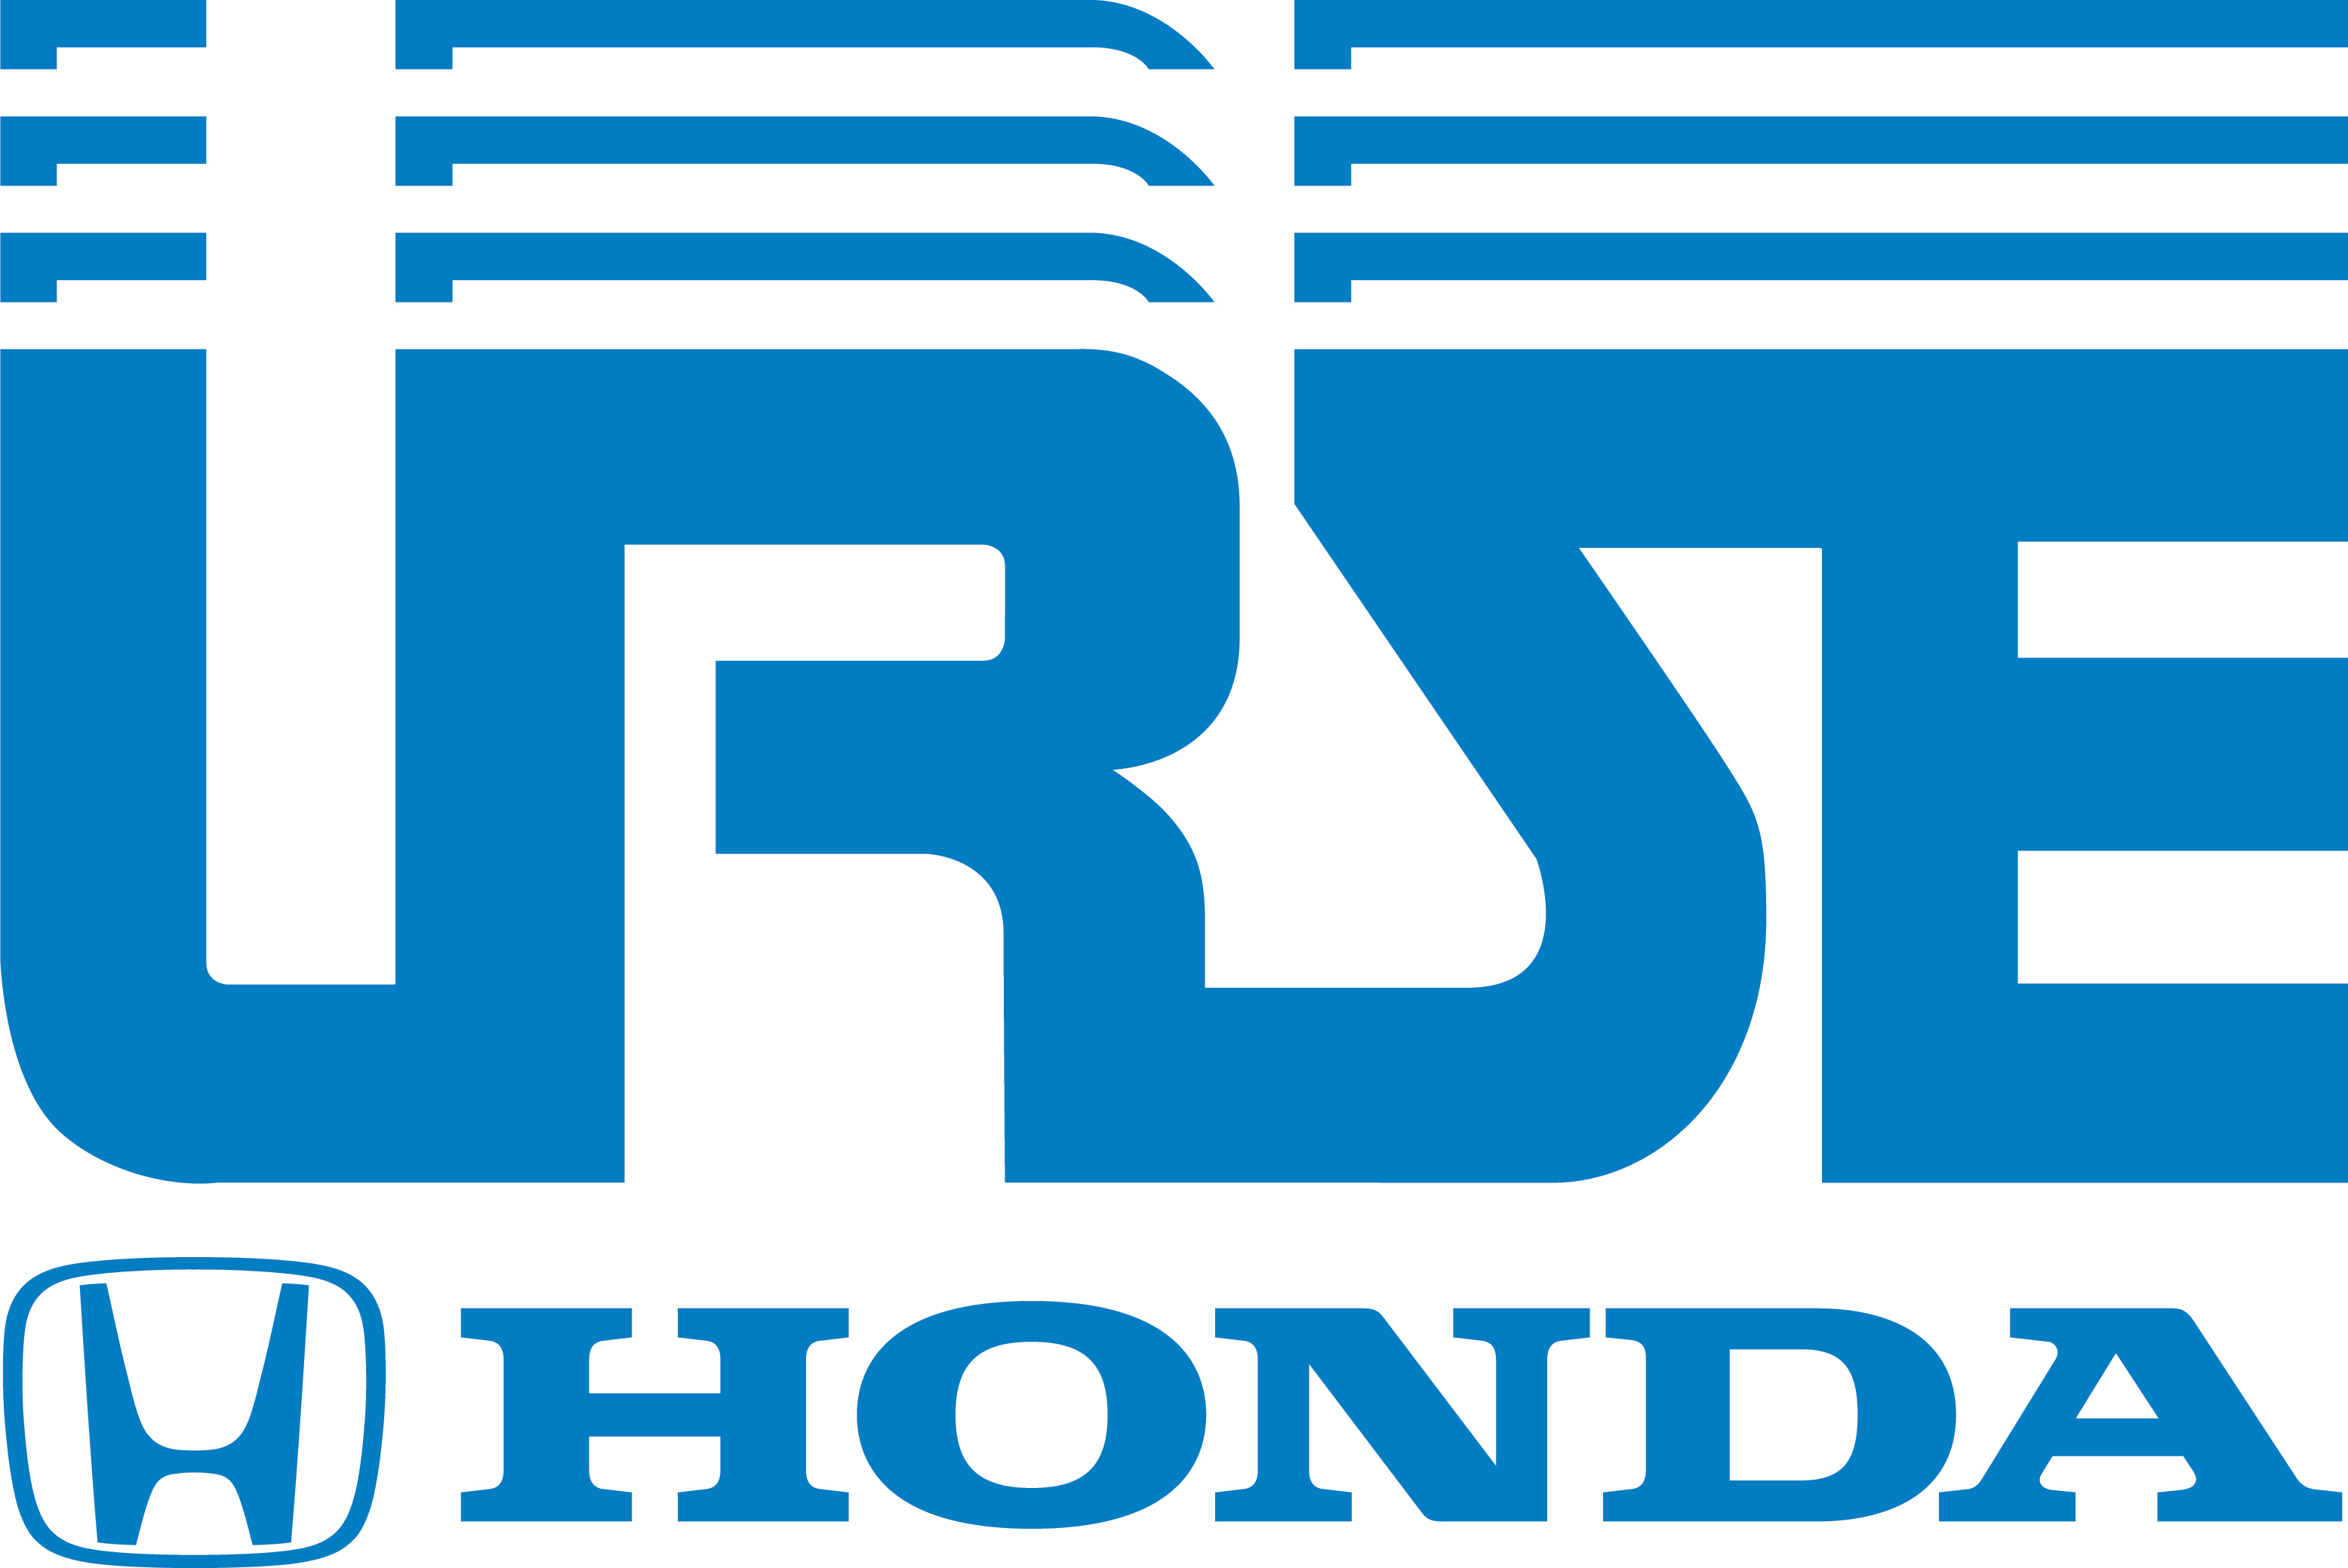 Urse Honda Logo